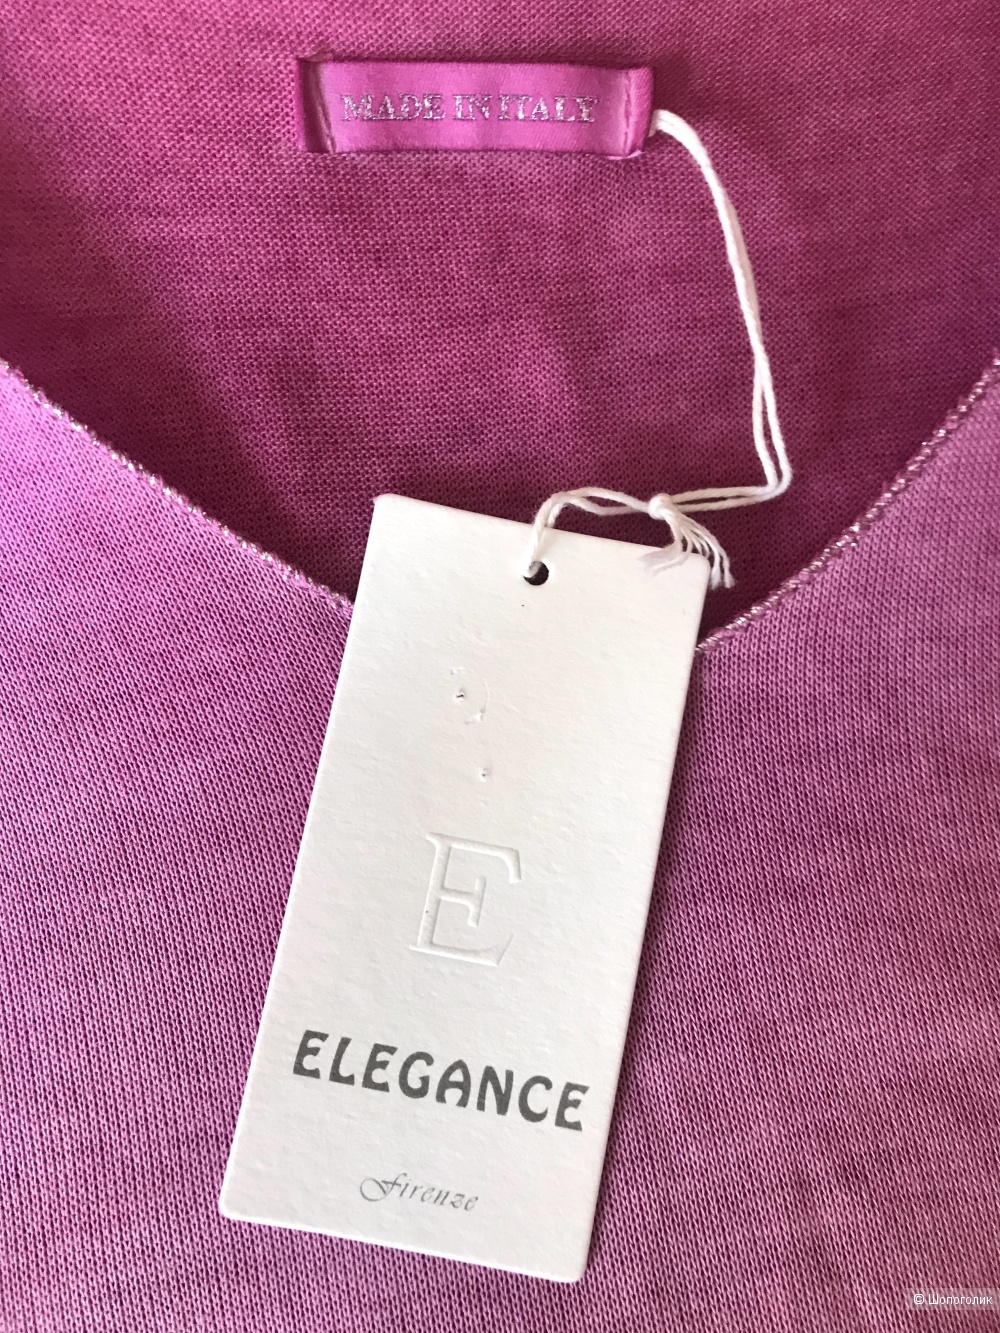 Топ-футболка Elegance. IT TU (42/44 RU)